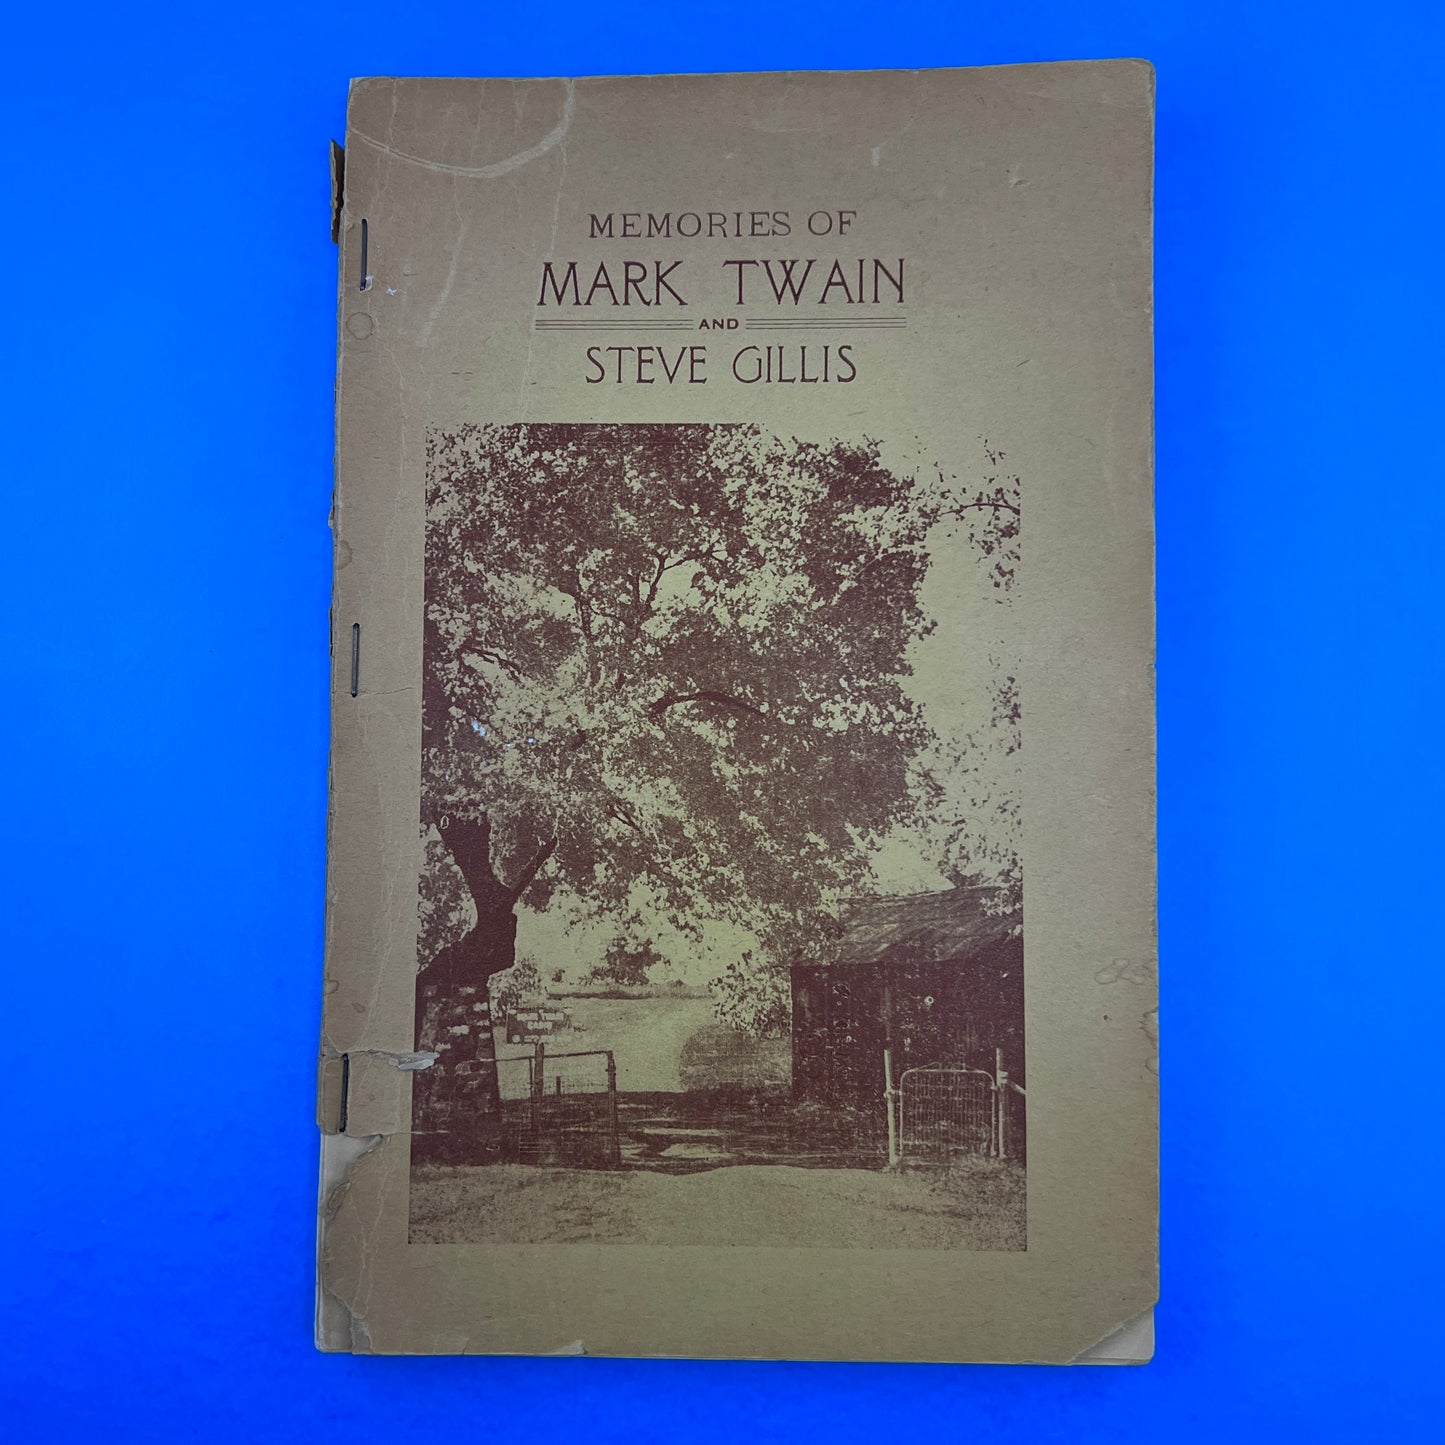 Memories of Mark Twain and Steve Gillis